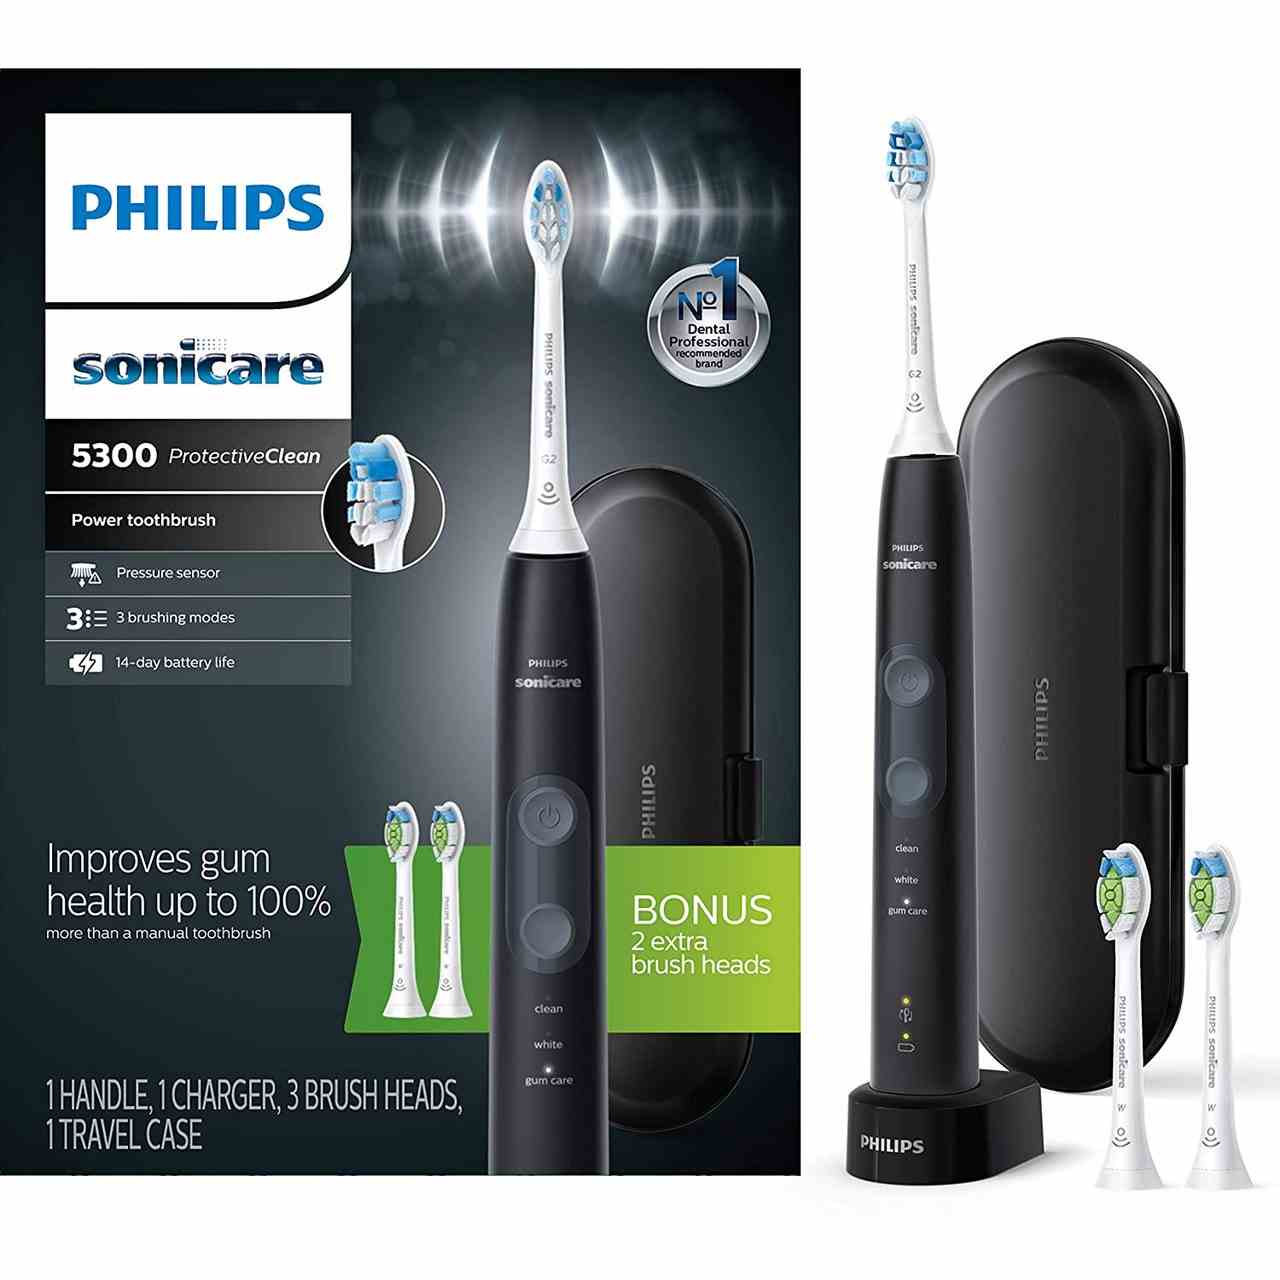 Das schwarz-weiße Philips Sonicare ProtectiveClean 5300 wiederaufladbare elektrische Zahnbürstenset auf weißem Hintergrund.